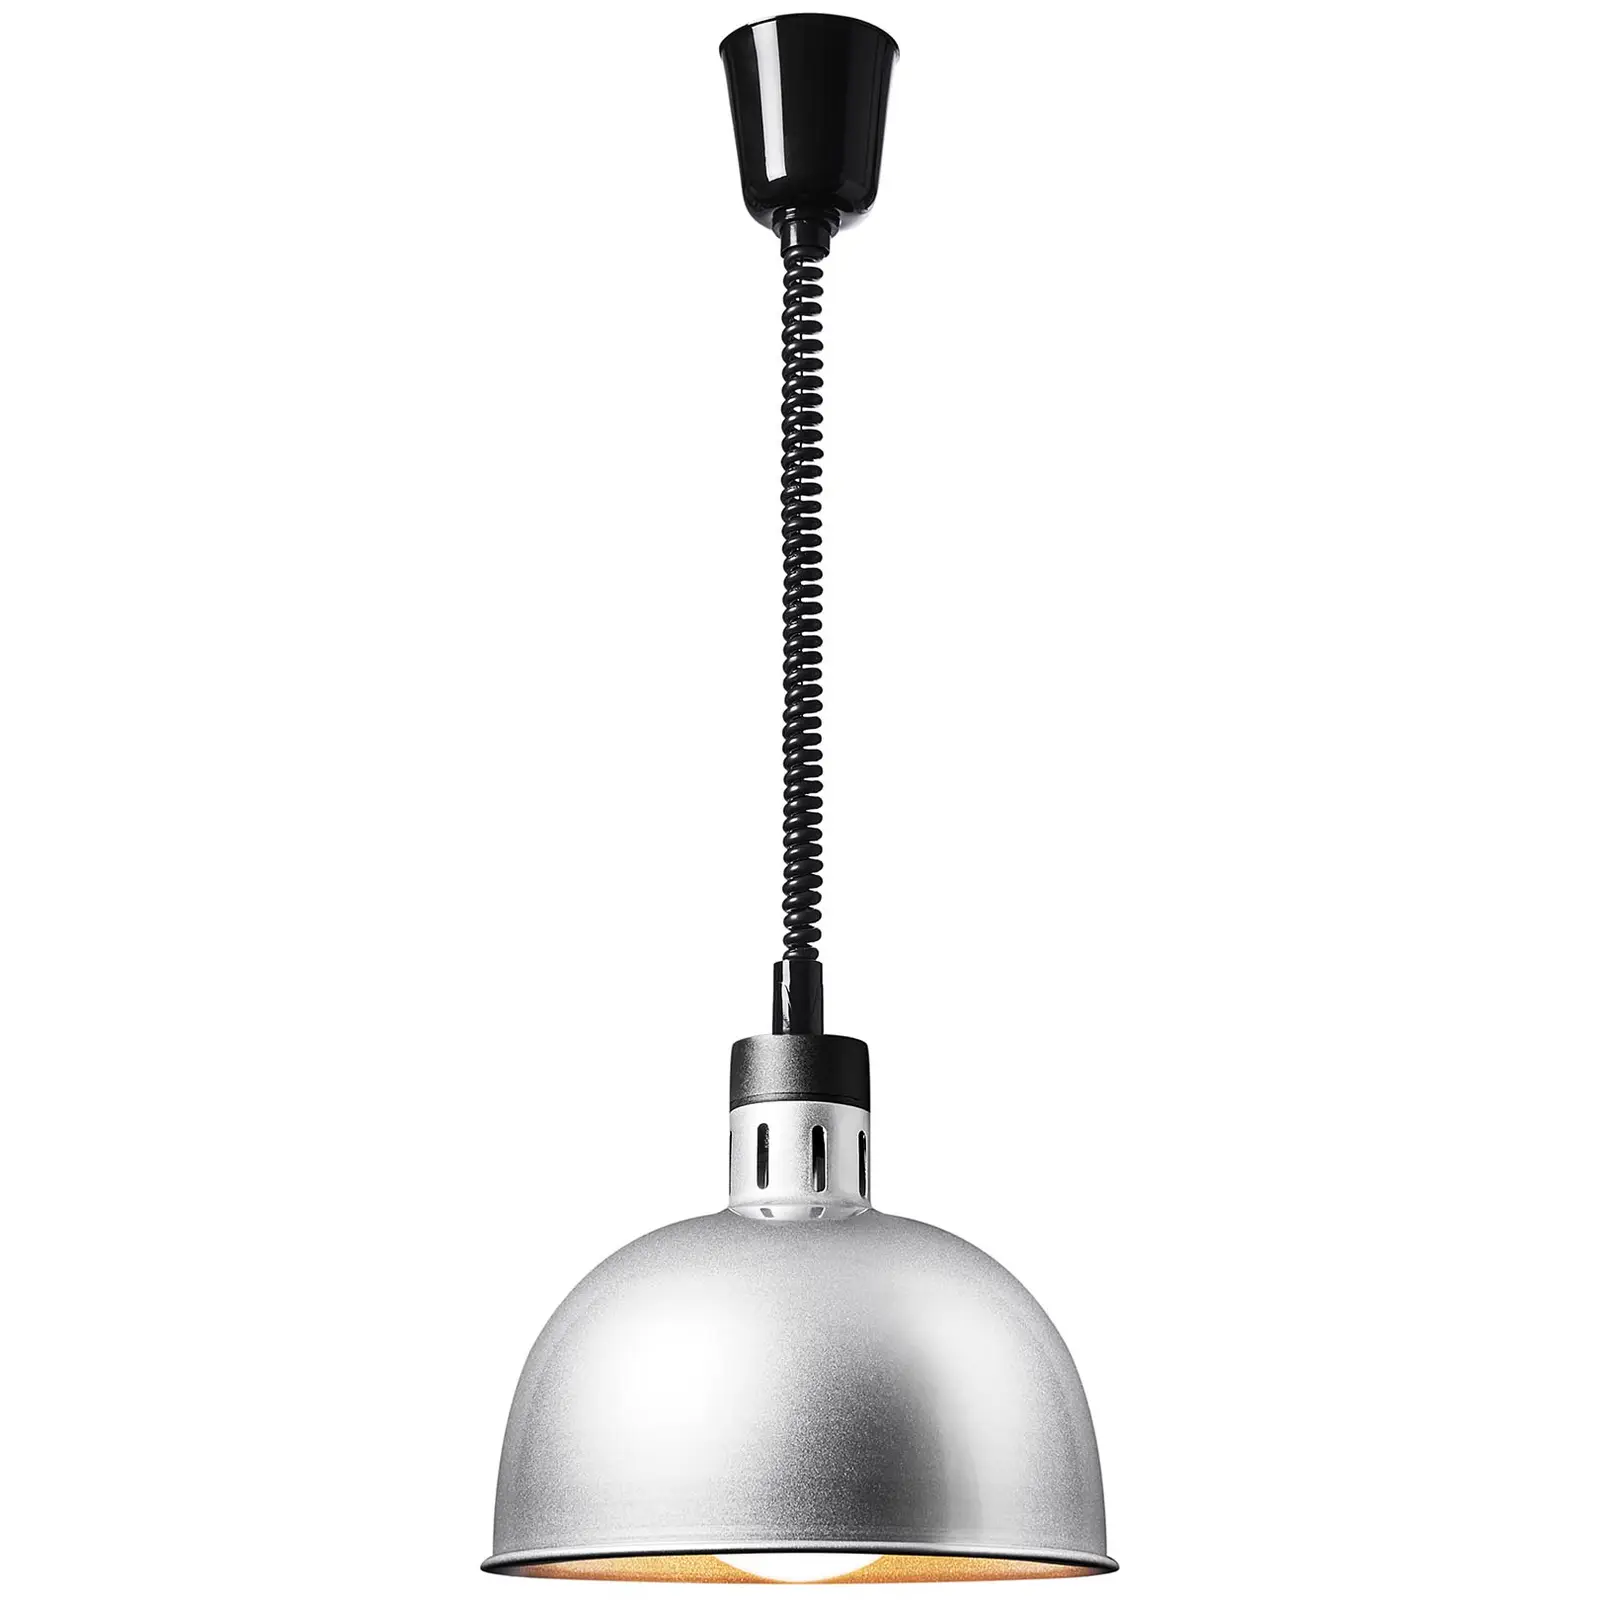 Lampada riscaldante - argento - 28.5 x 28.5 x 29 cm  - acciaio - regolabile in altezza